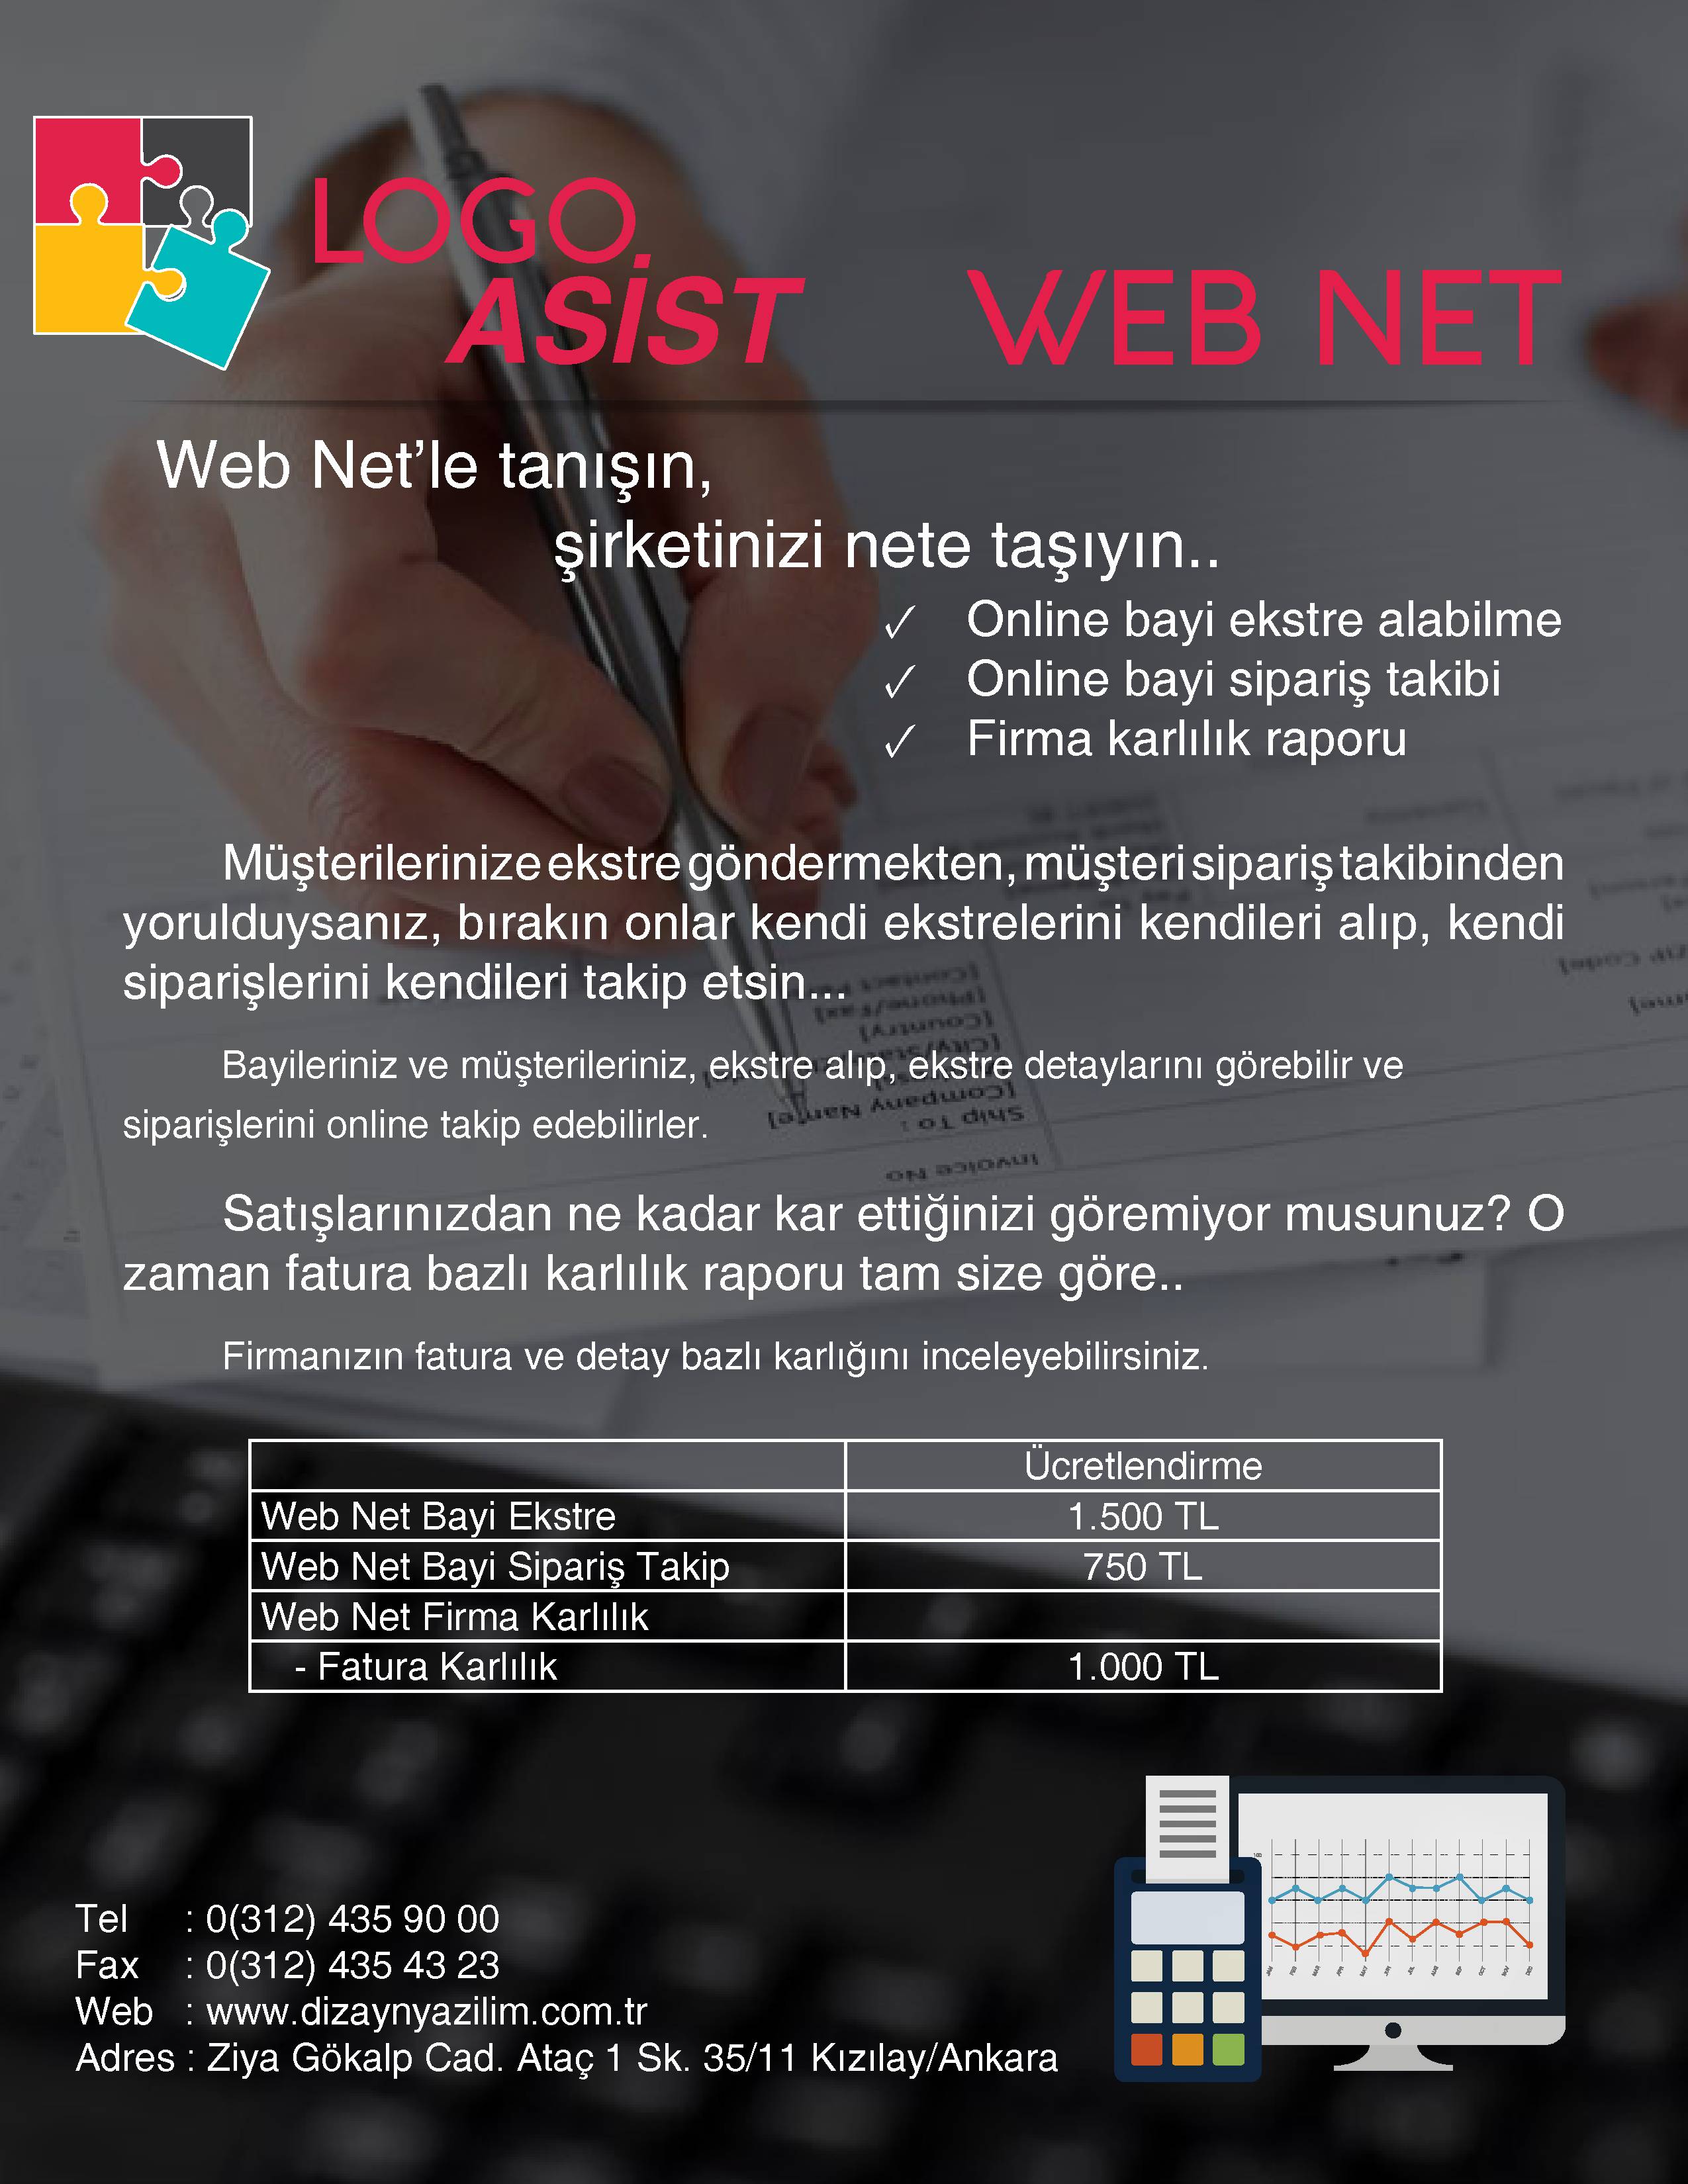 Web Net